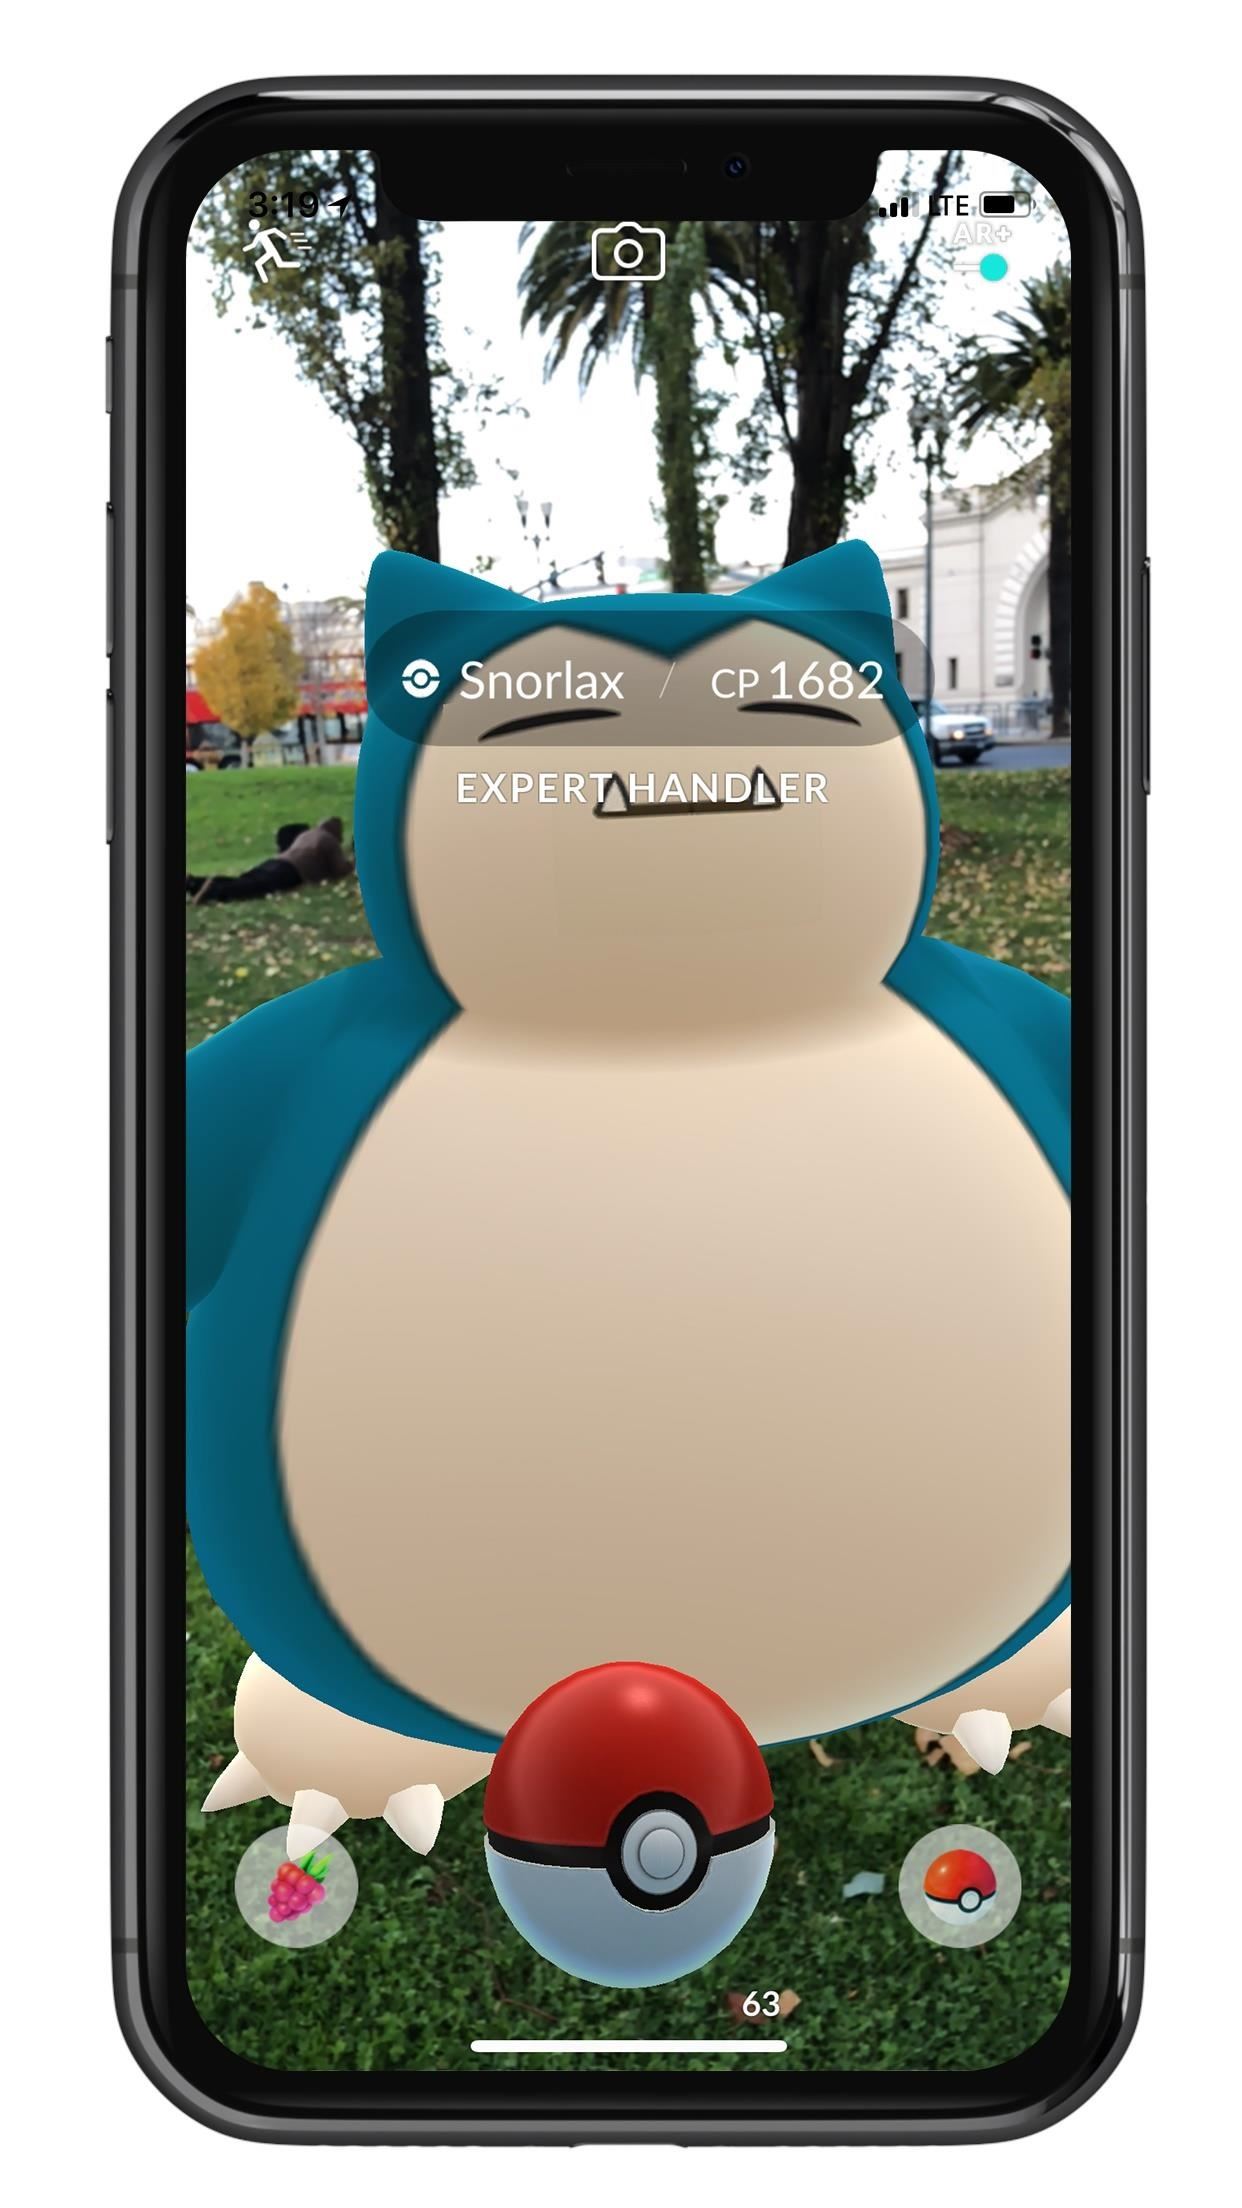 Apple AR: ARKit Update for Pokémon Go Makes Monsters Bigger & Smarter